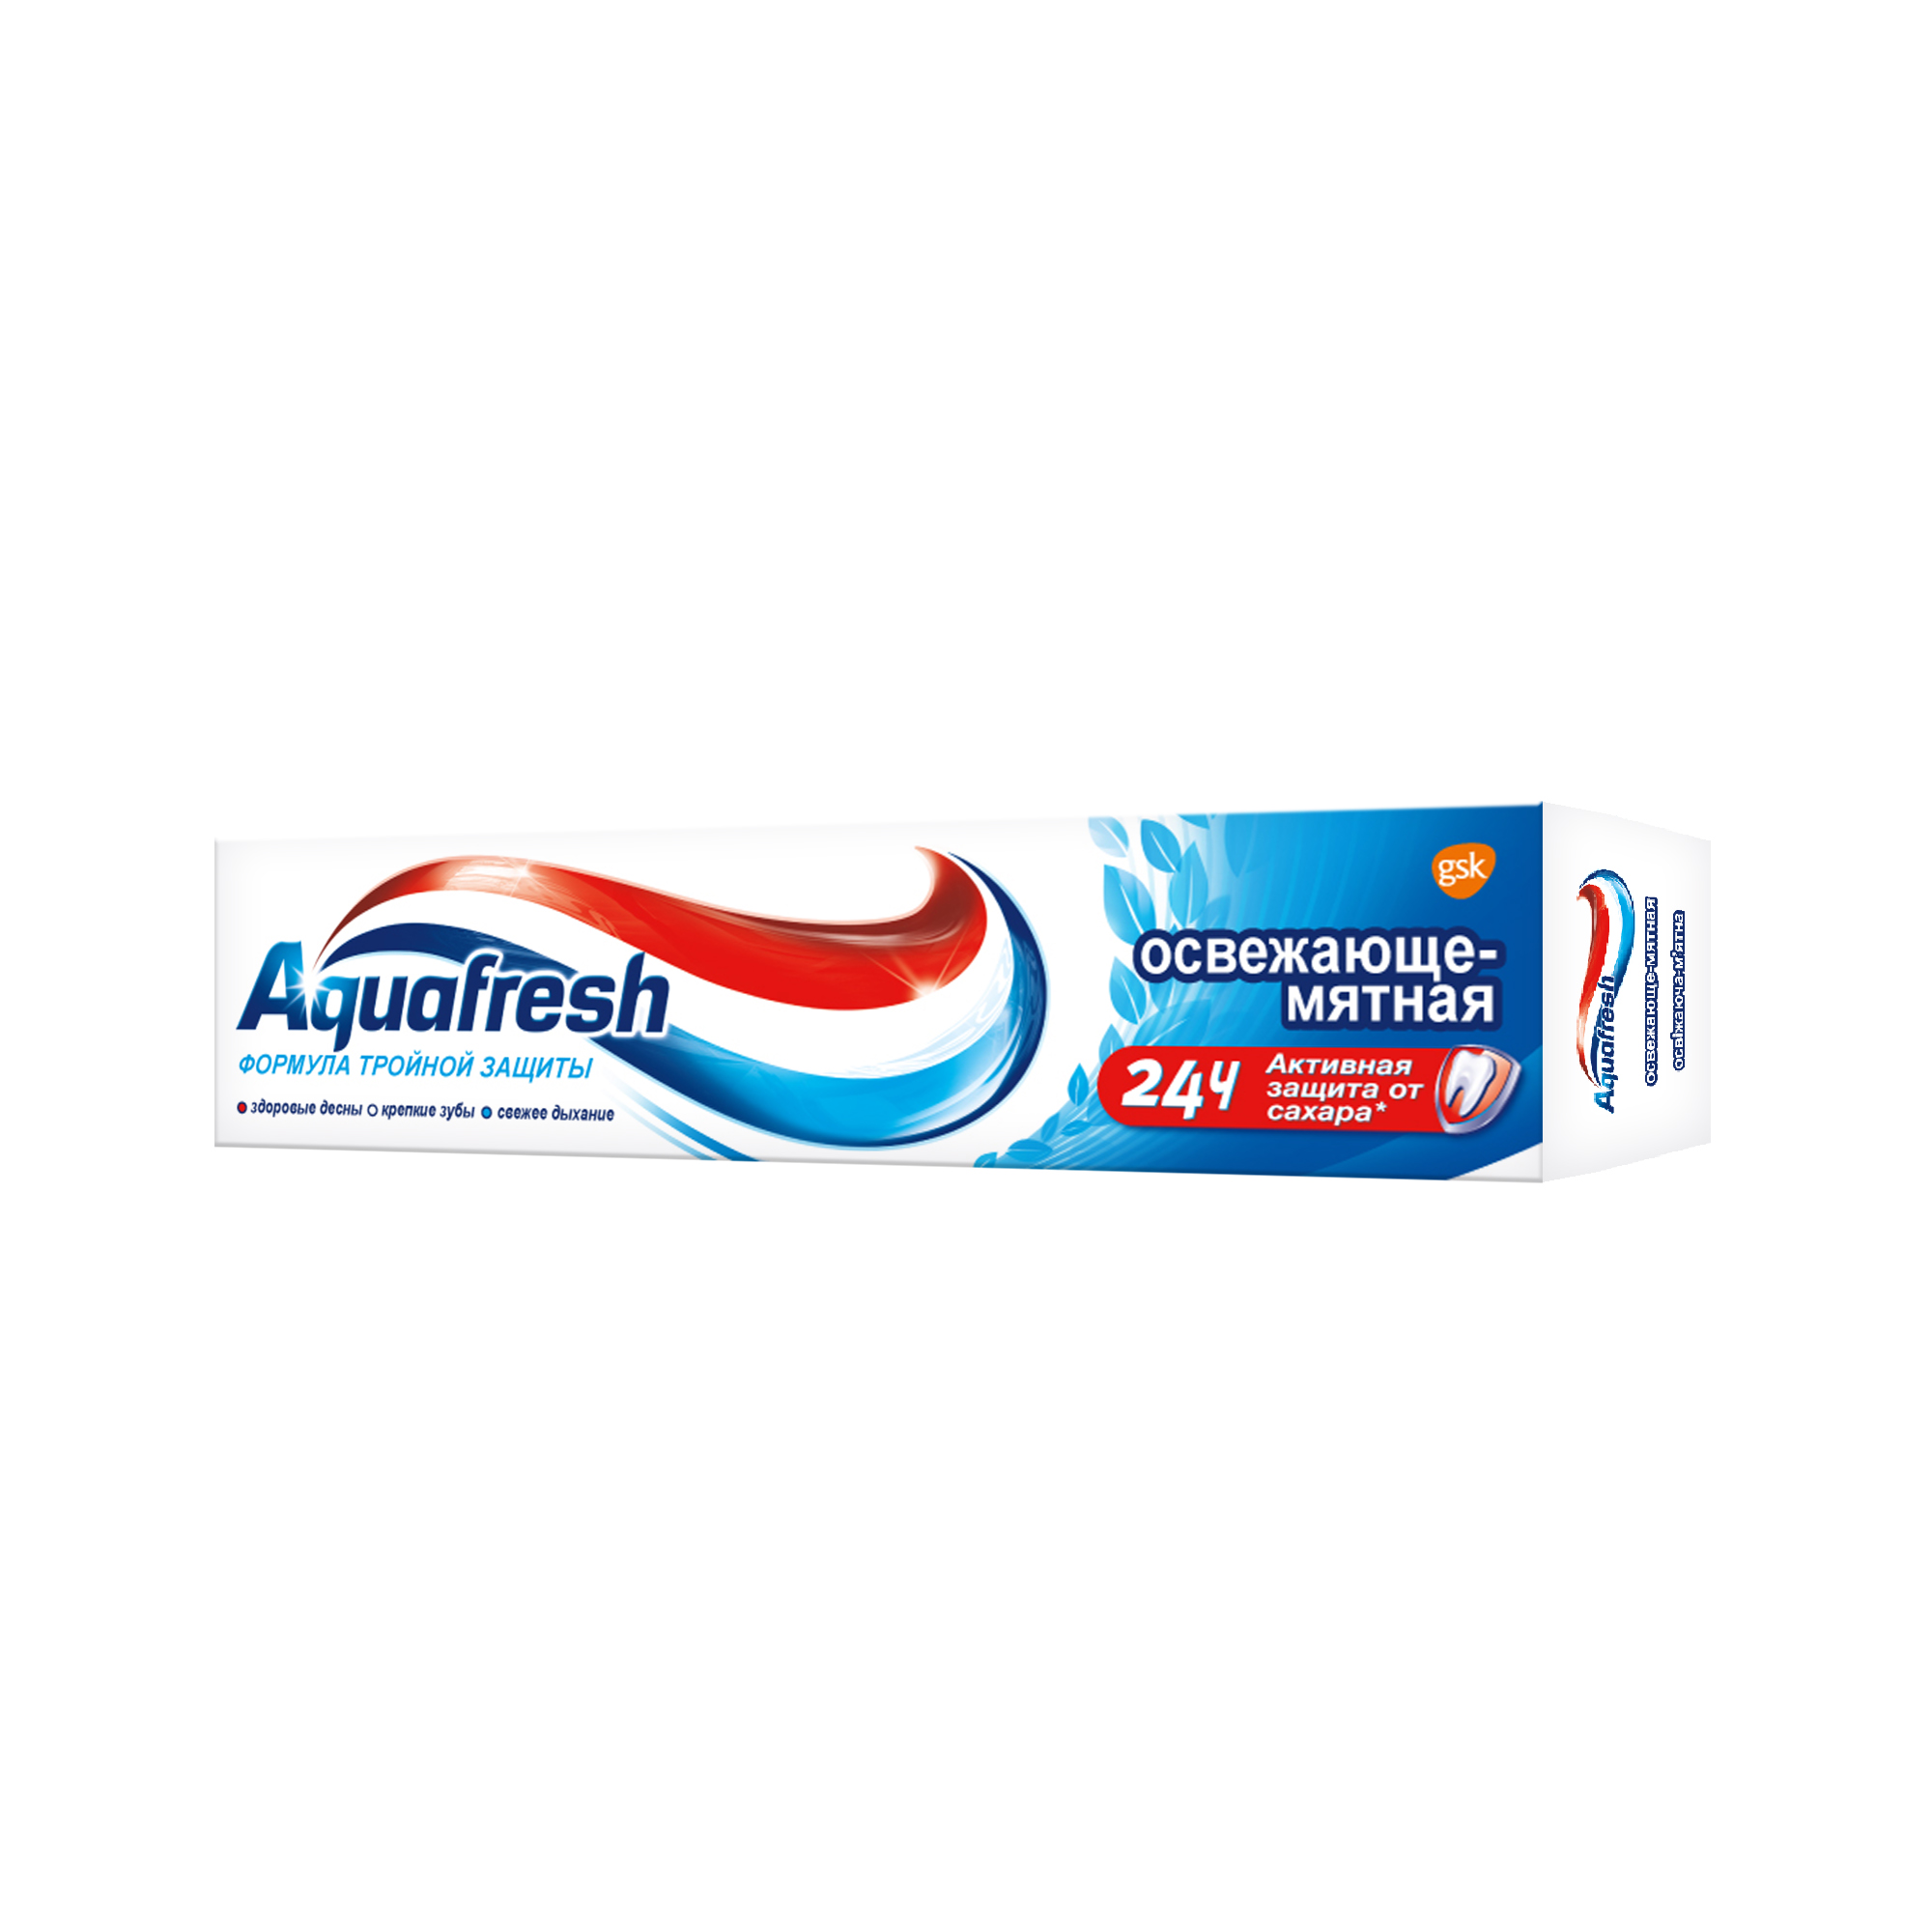 Зубная паста Aquafresh Освежающе-мятная 50 мл - фото 4